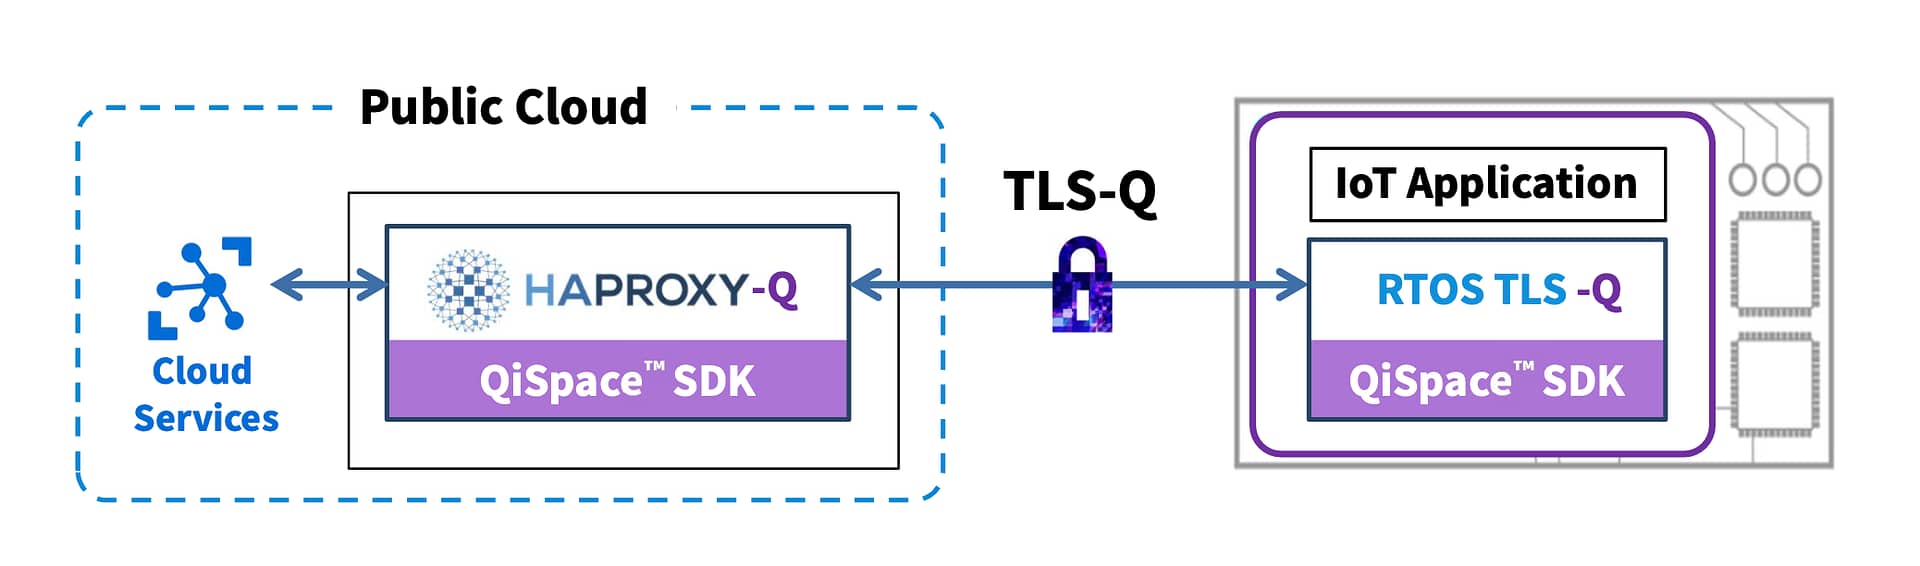 TLS-Q image